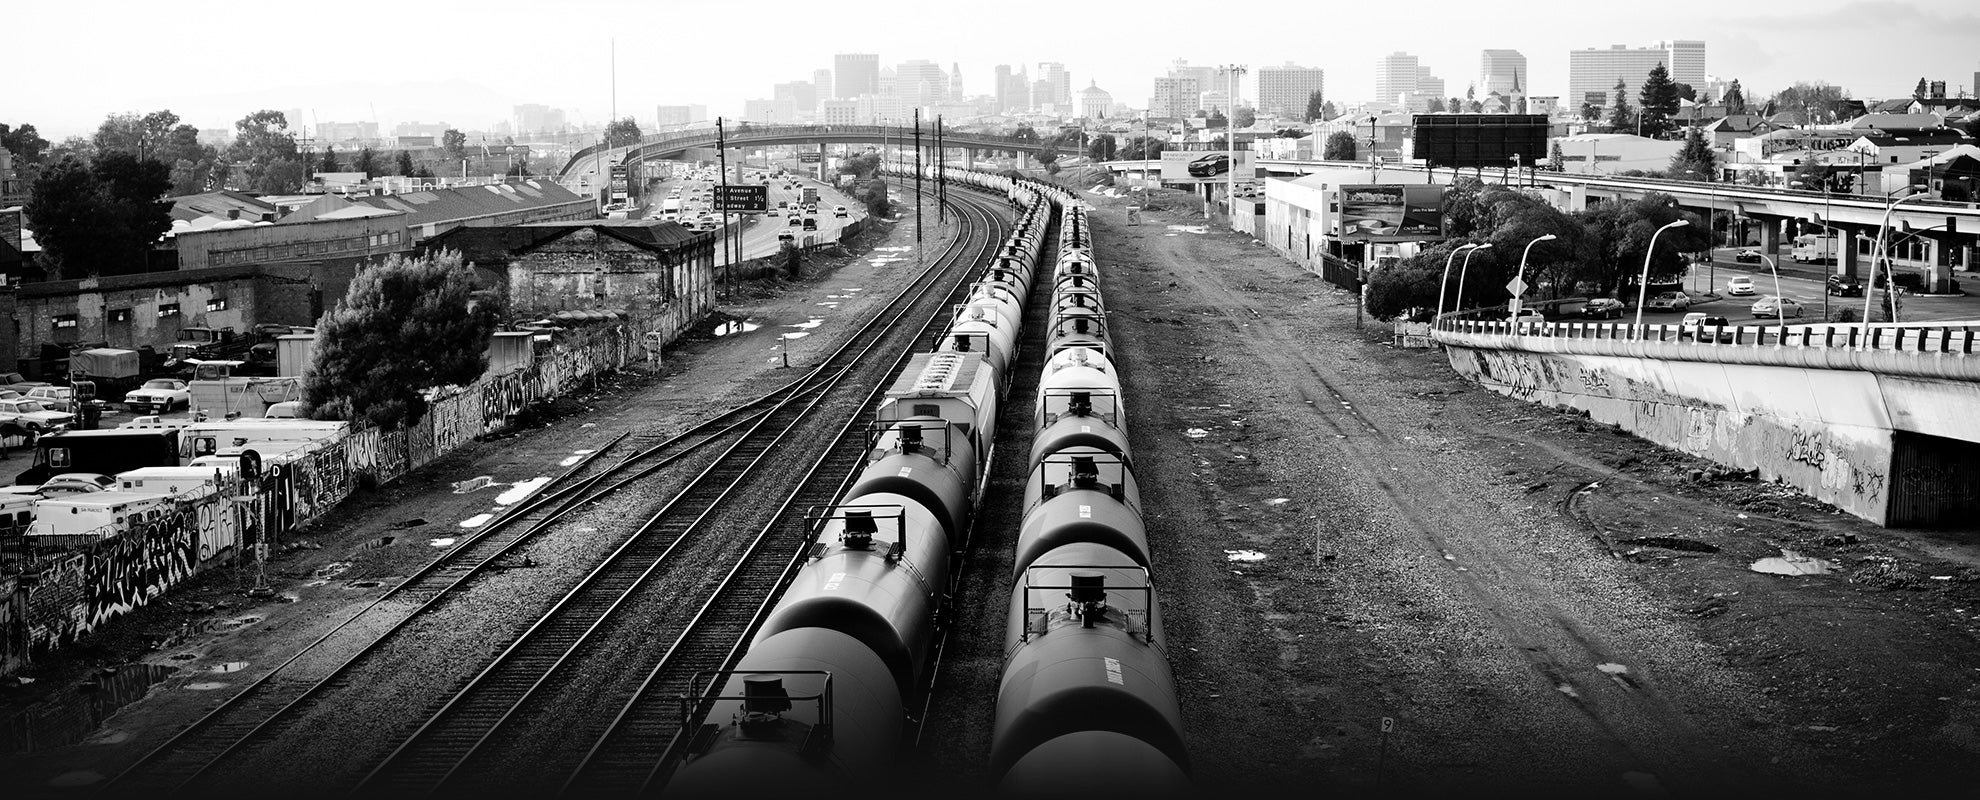 Oil trains in a Oakland, CA, railyard.